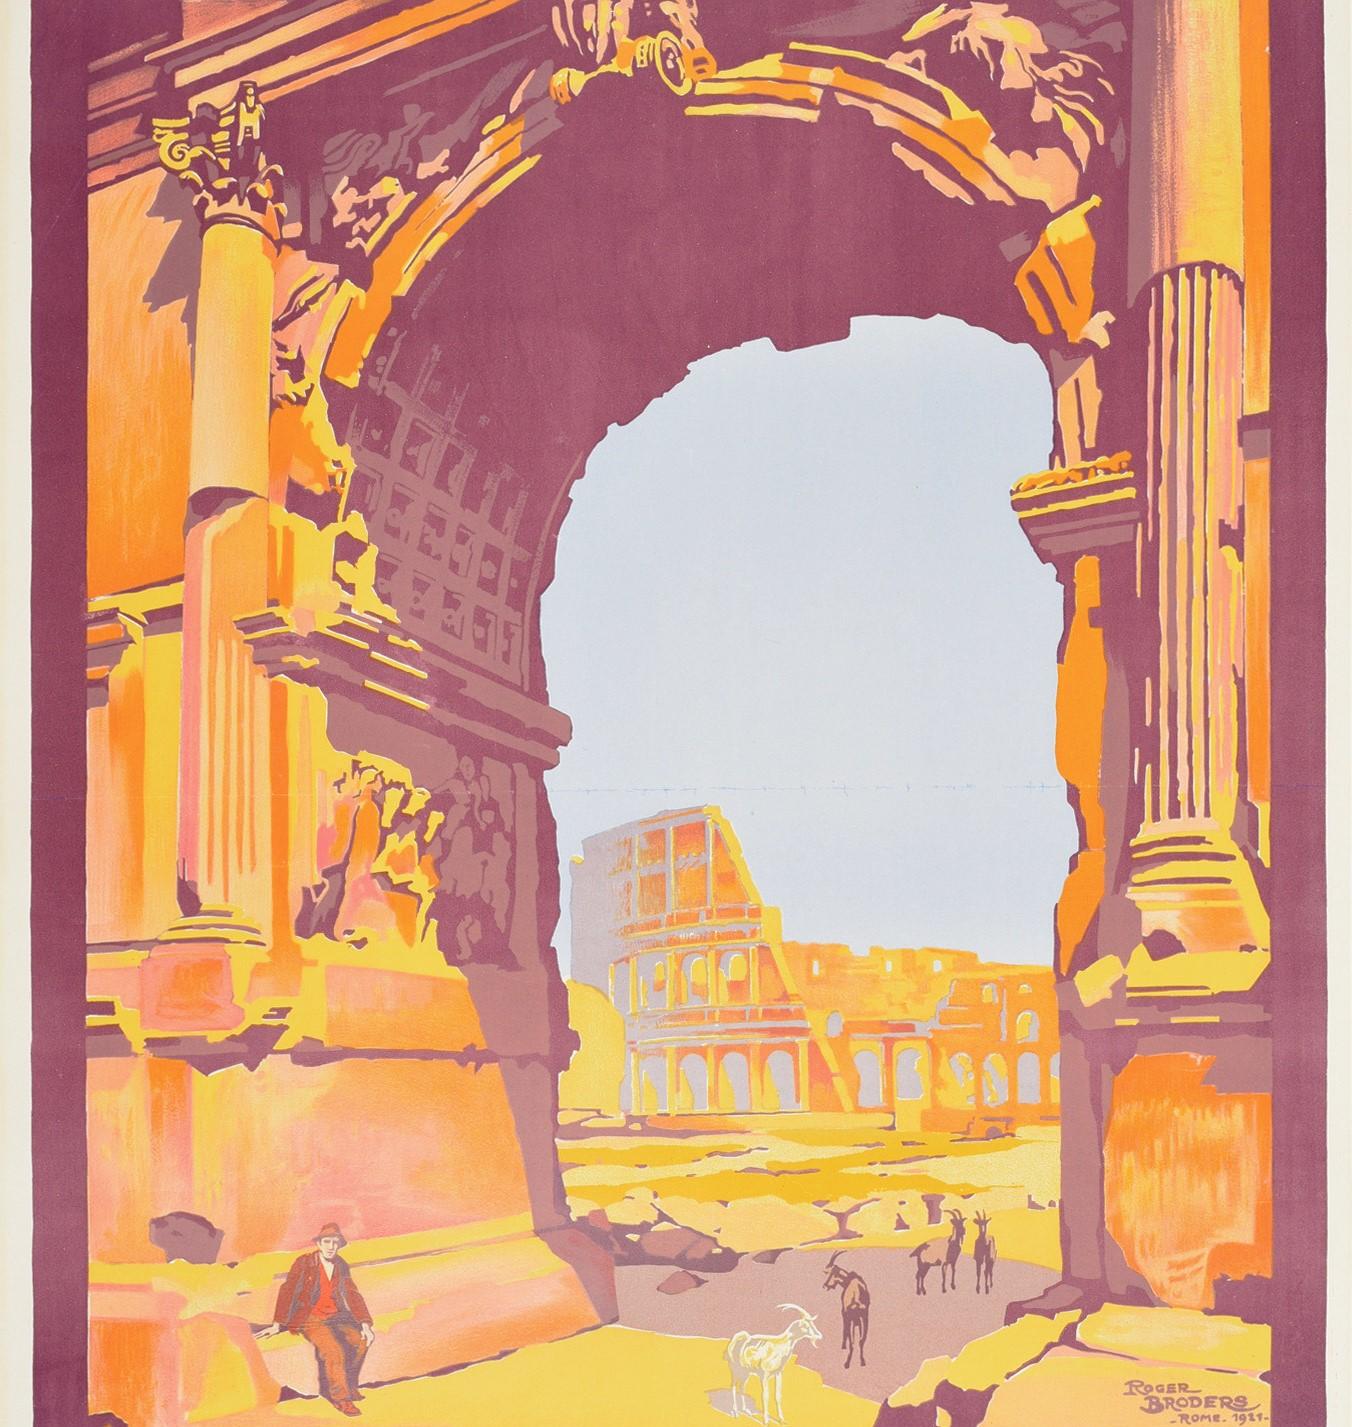 Original vintage travel poster for Rome issued by the Paris Lyon Mediterranee PLM railway - Rome par le train de luxe 